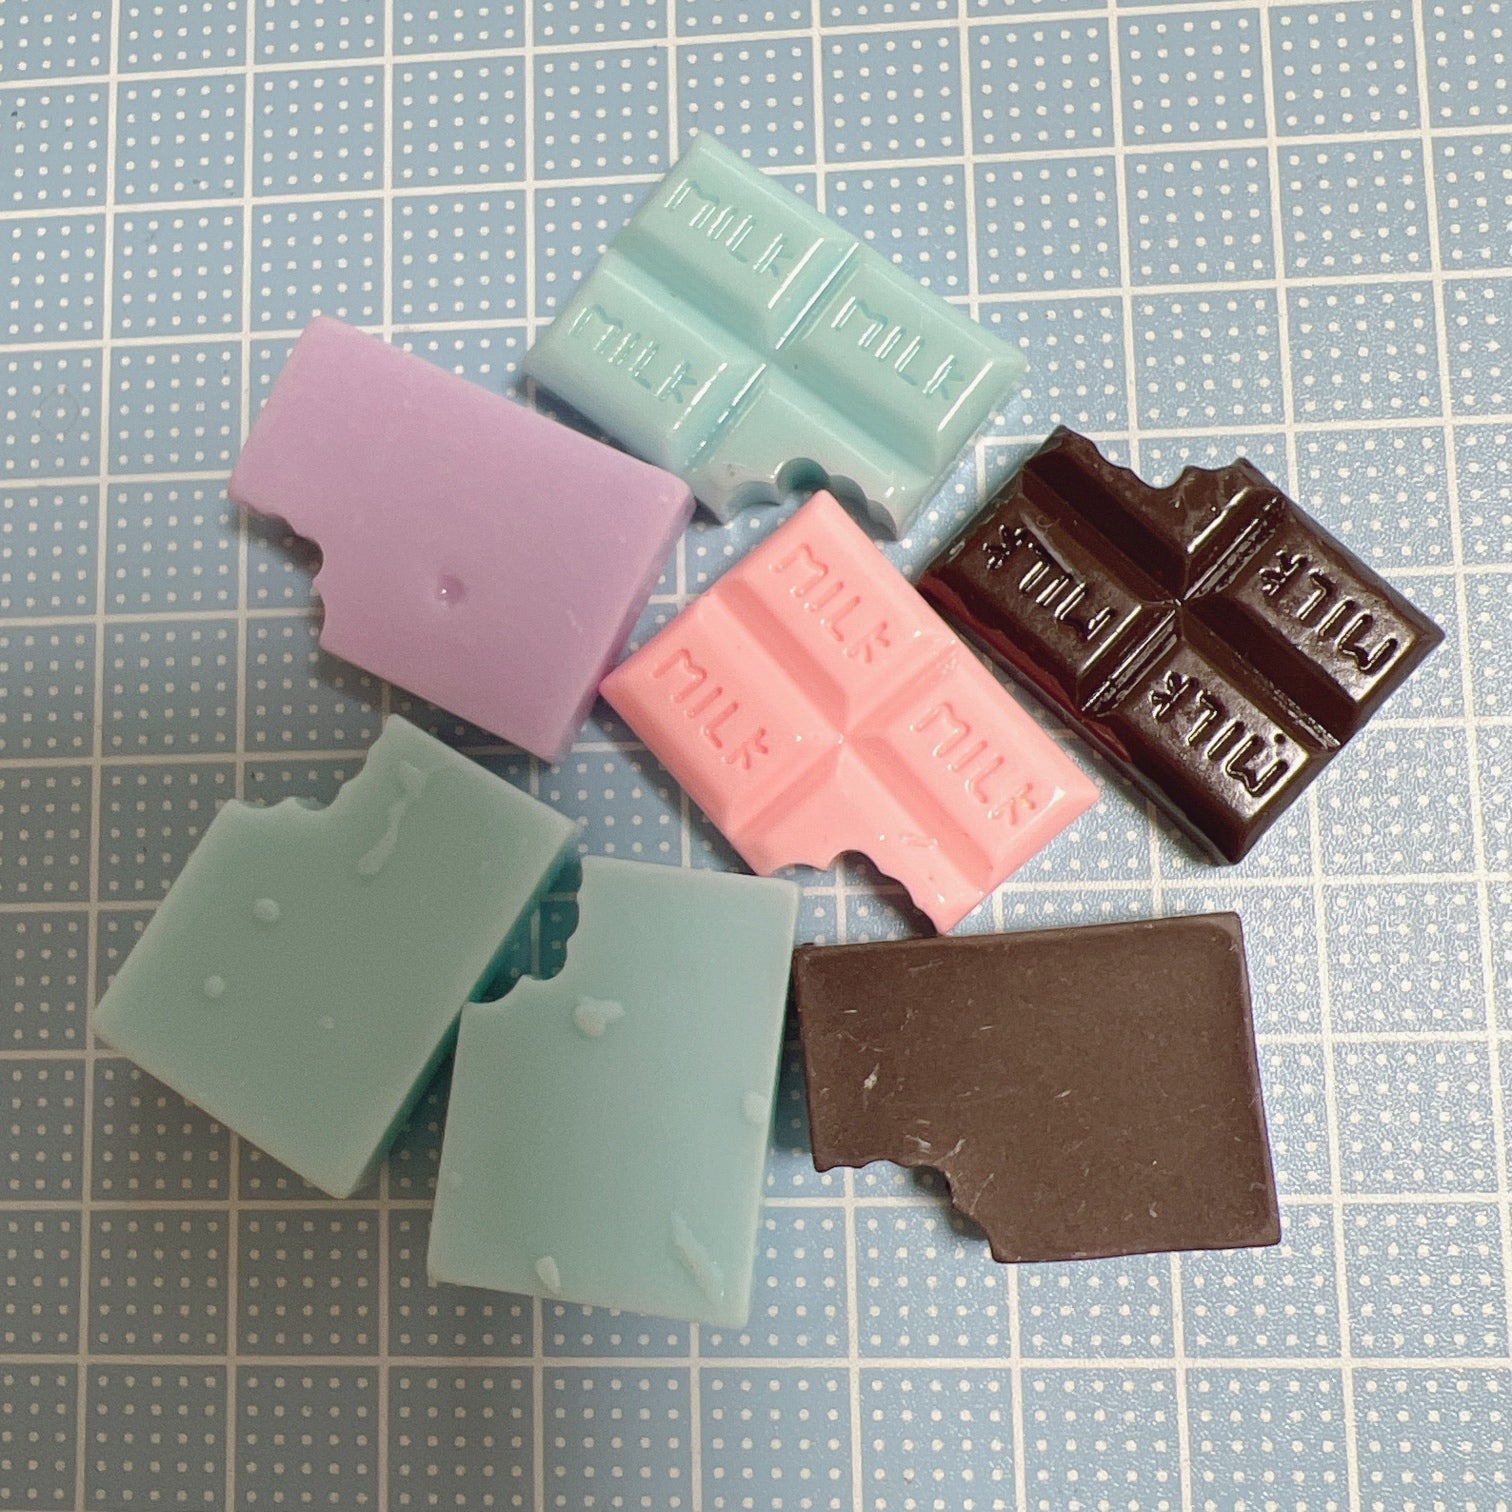 デコパーツ 食べかけ 板チョコ 5色 10個セット MILKチョコ プラパーツ – くるくるコレクション